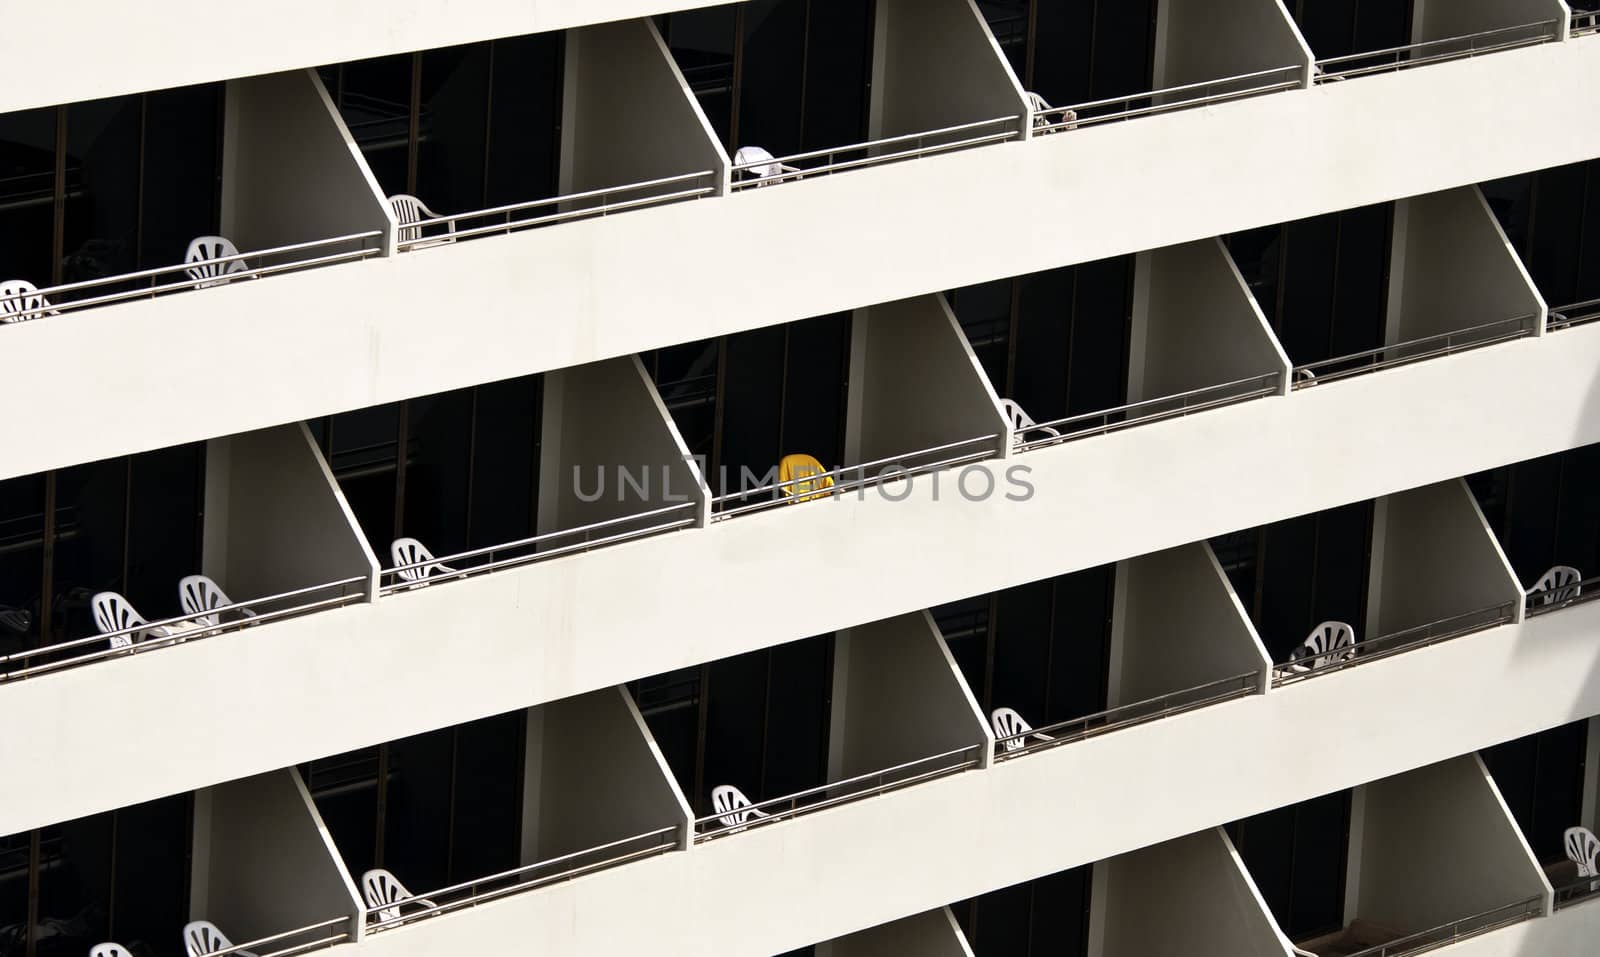 Hotel balconies by bah69